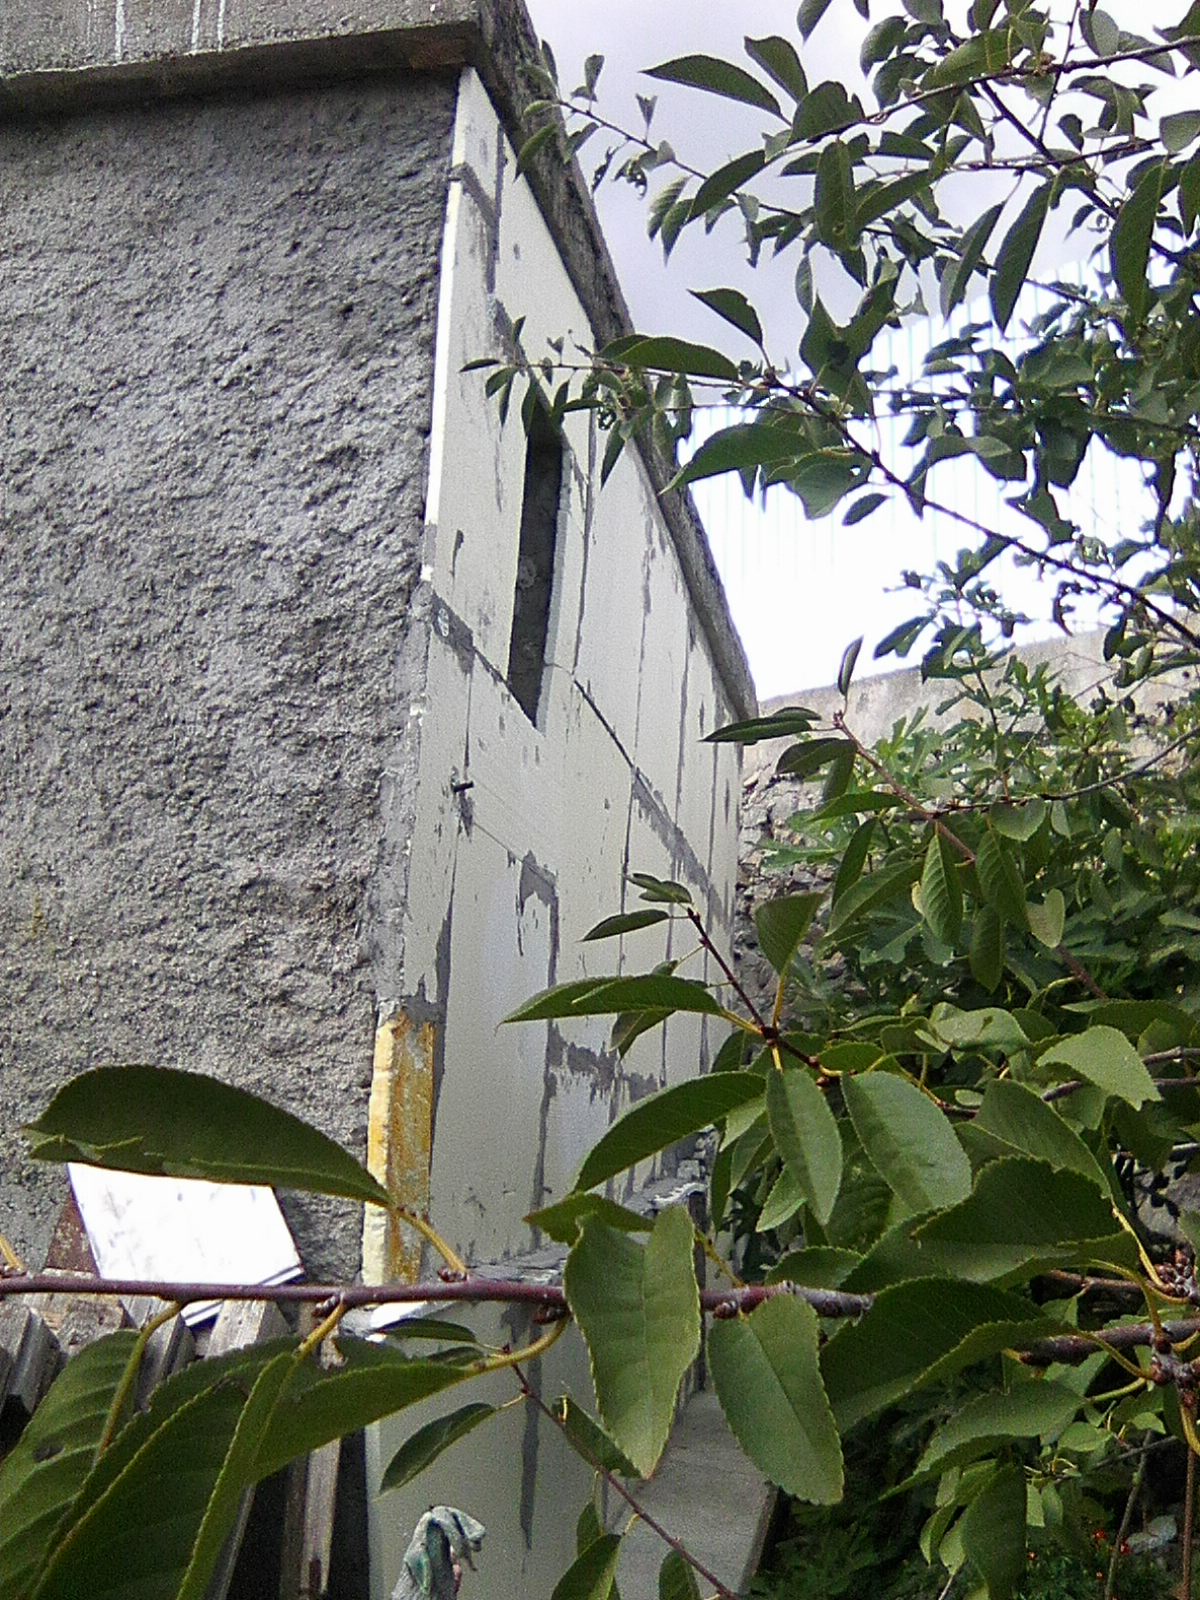 Продажа 3 сотки под ИЖС Кореиз Ялта с строением- можно прописаться,забор,ворота,сад. - фотография